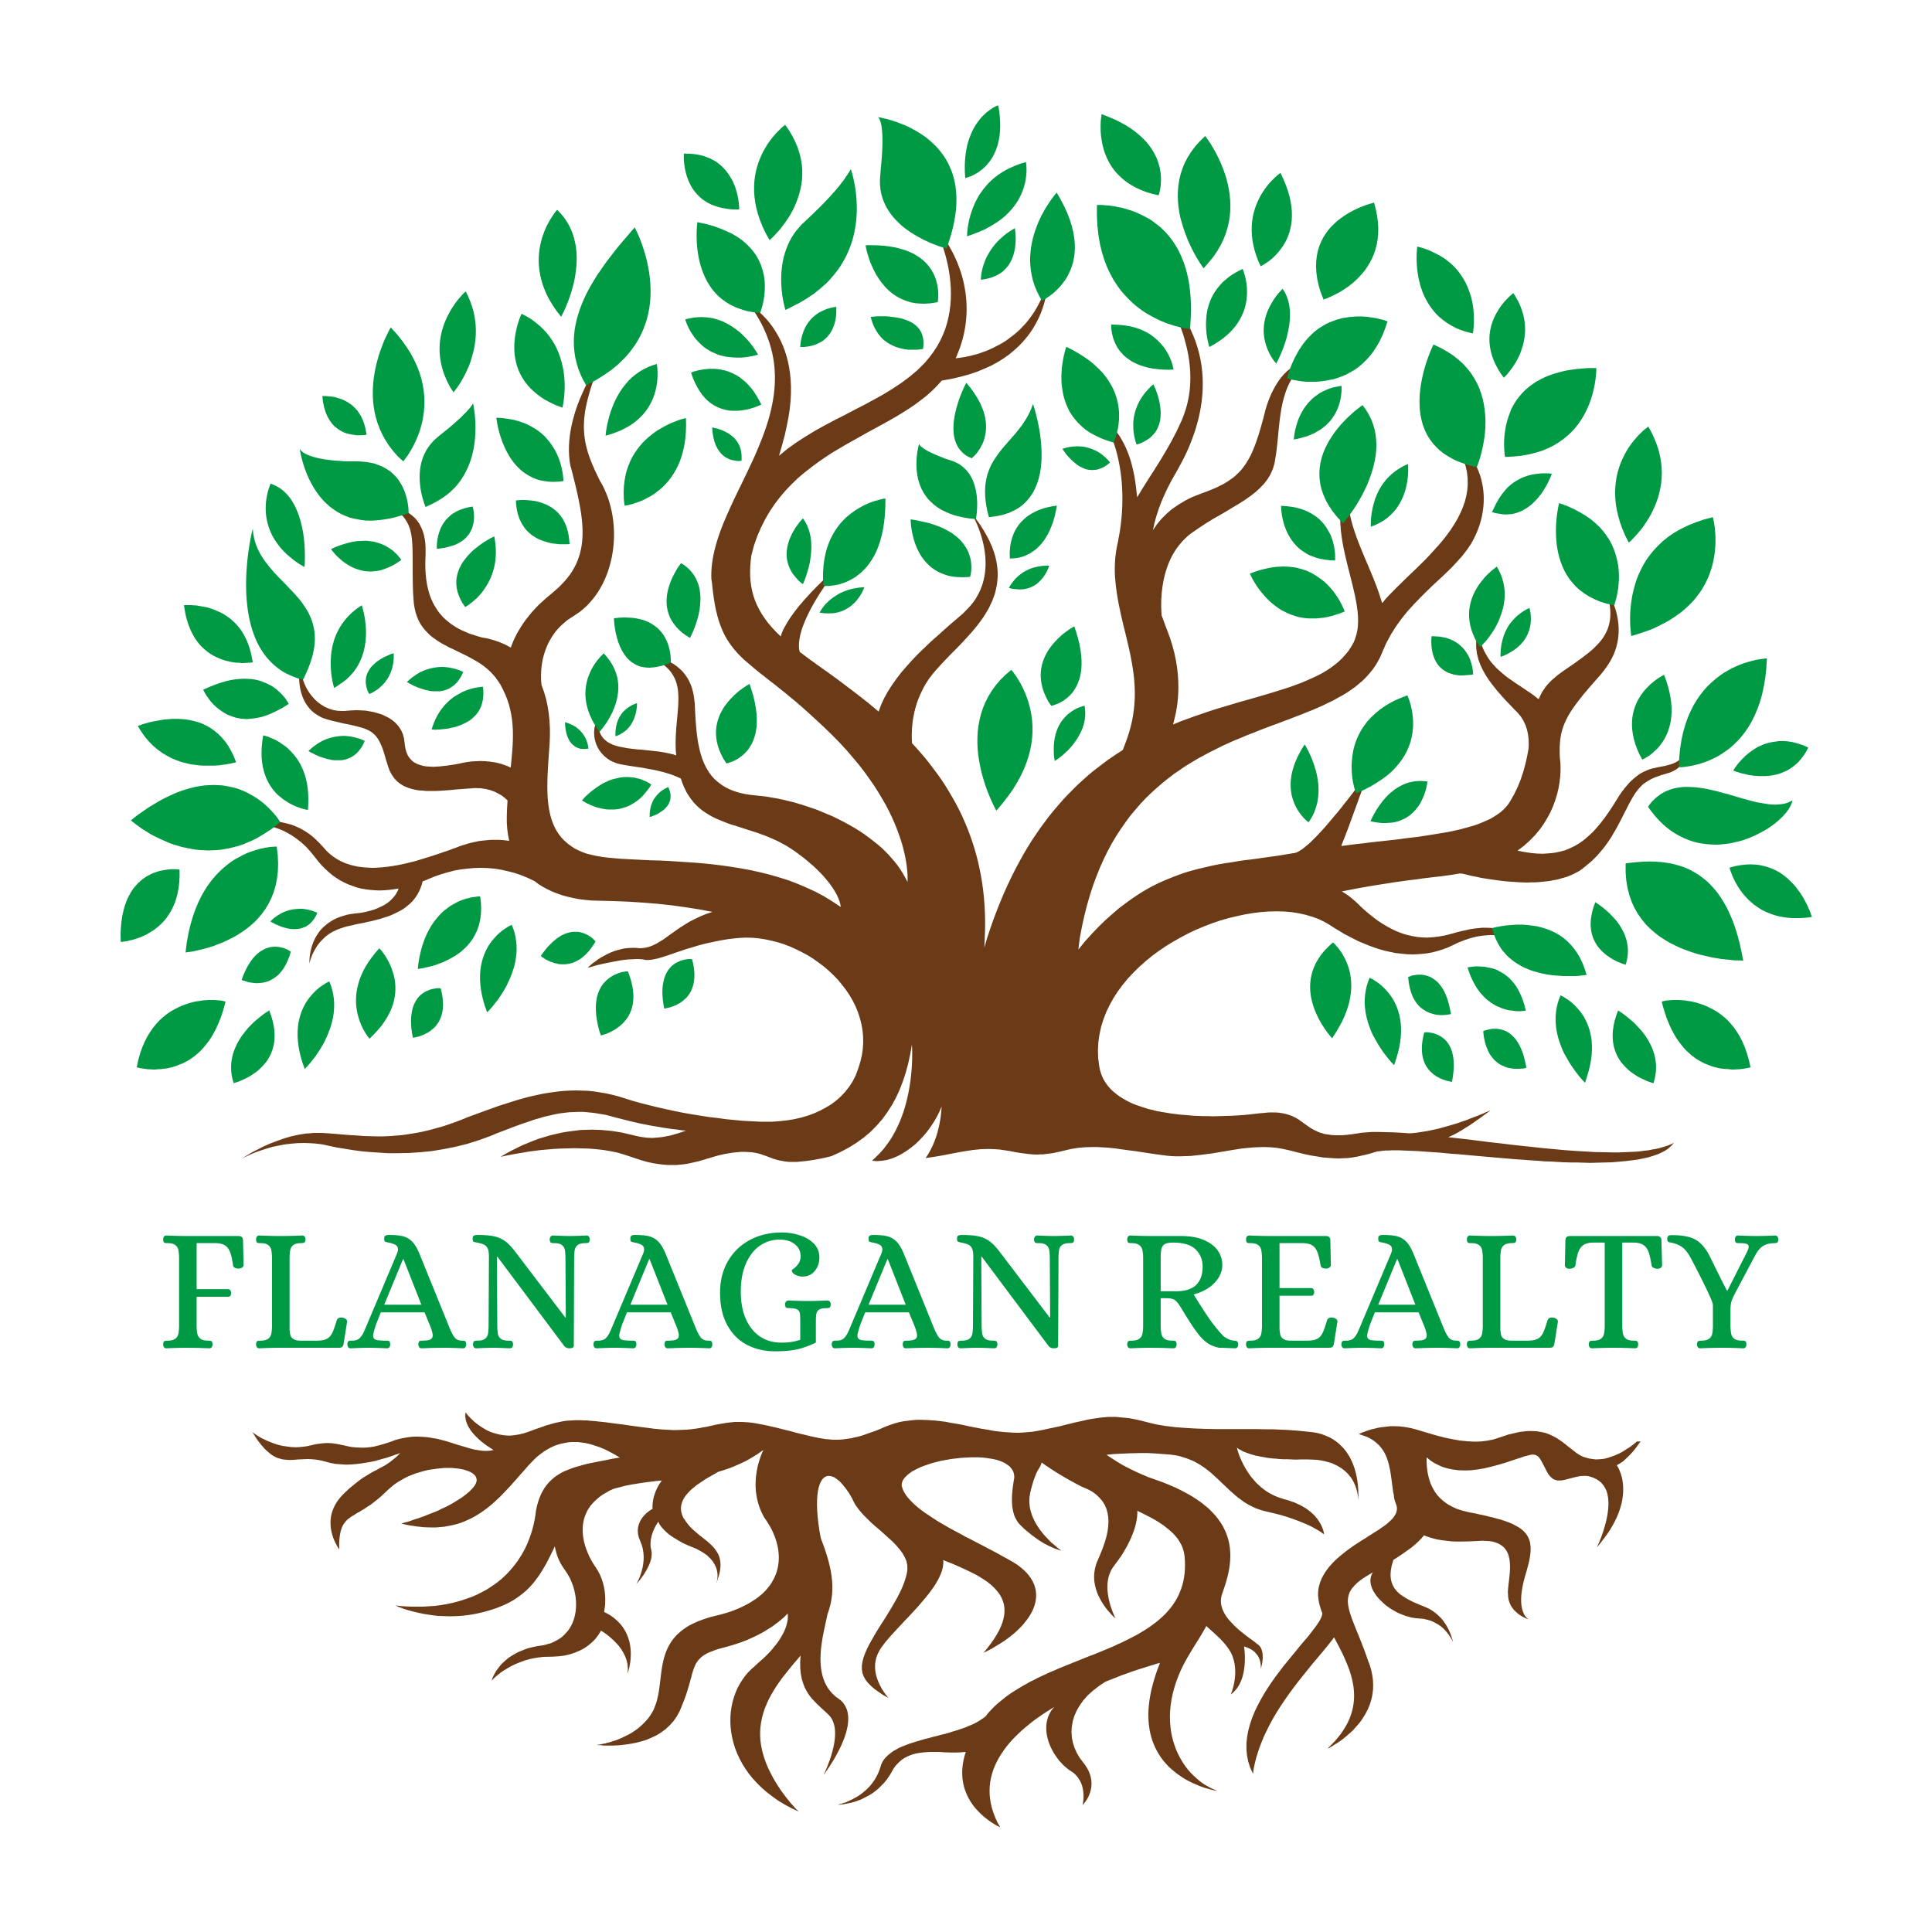 Flanagan Realty